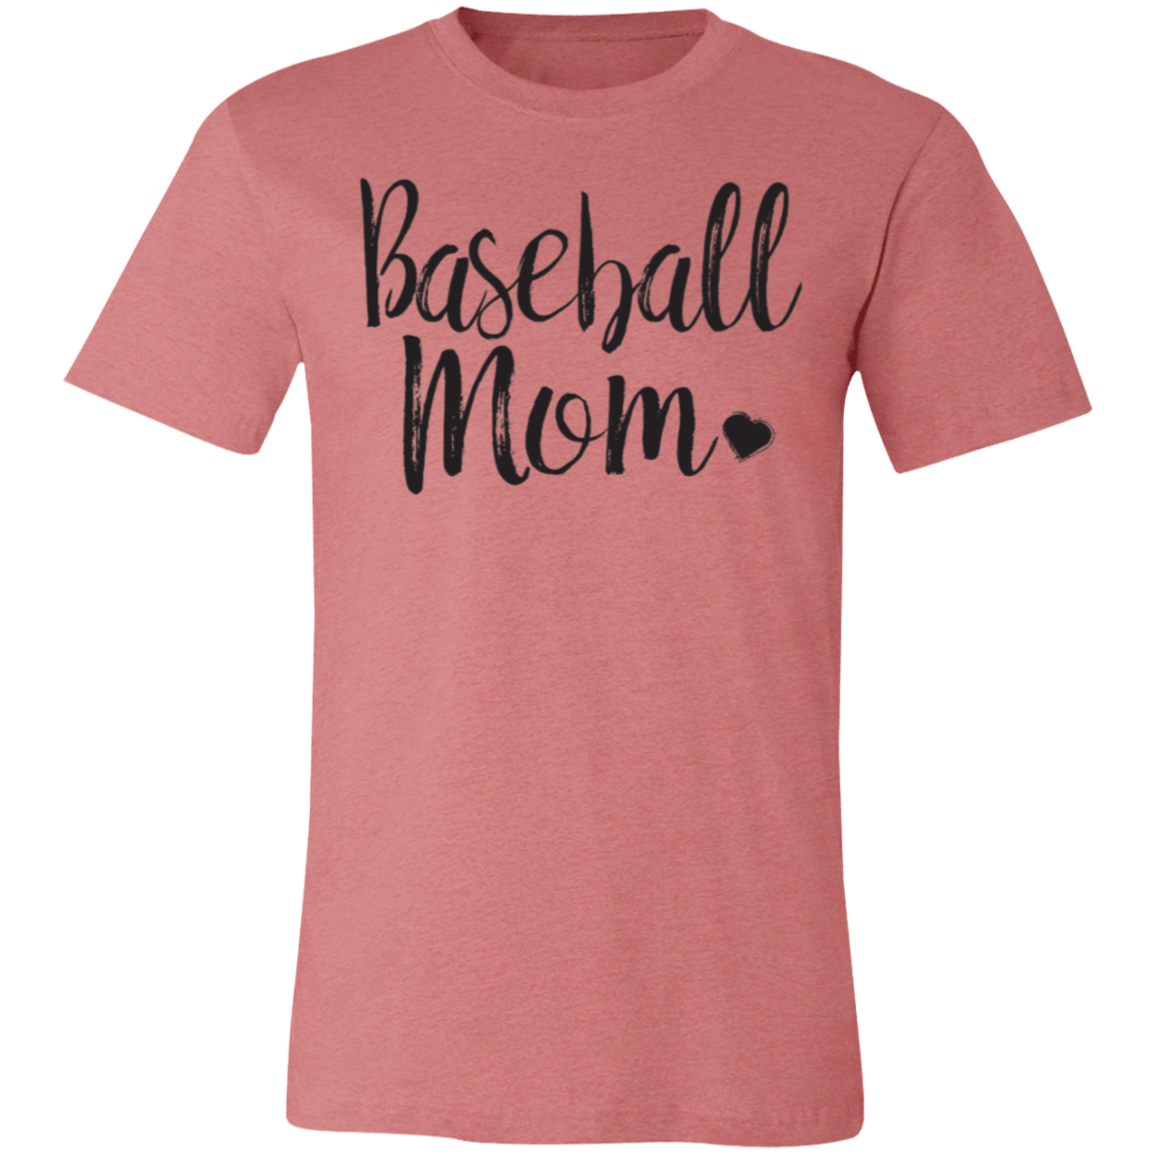 Baseball mom Premium Women's Tee